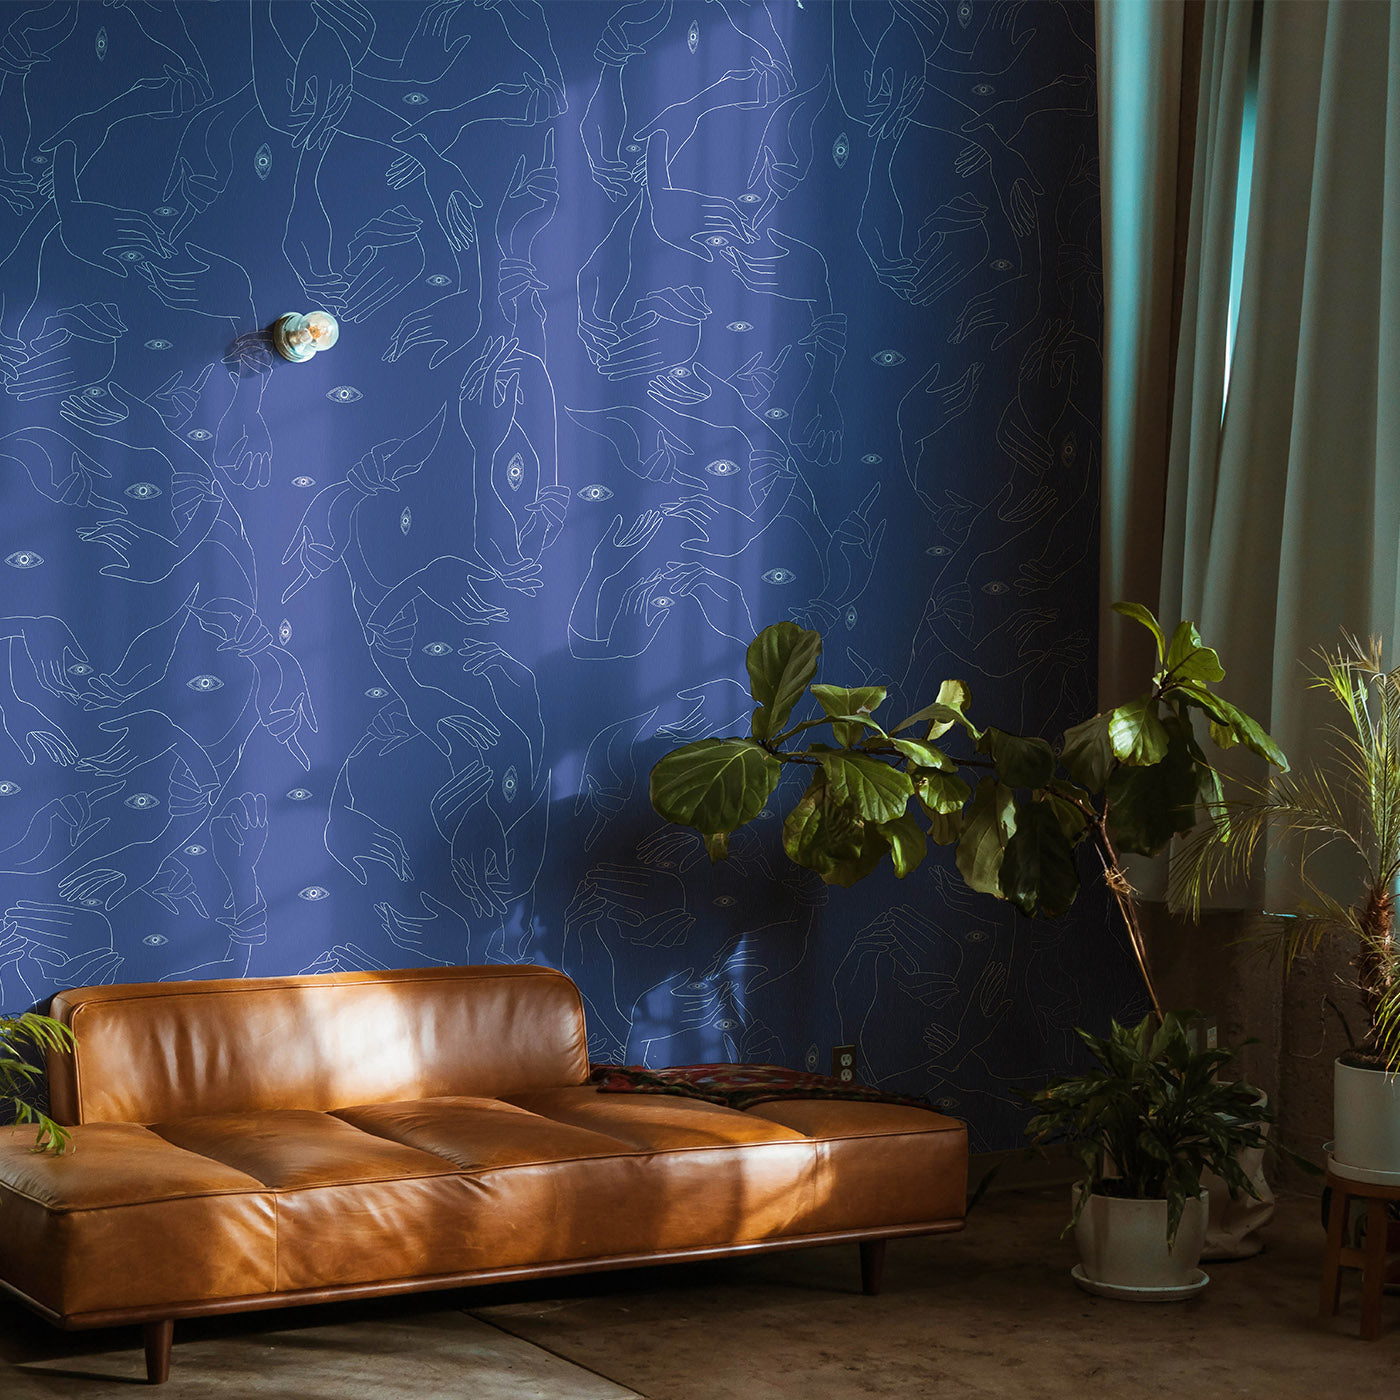 Uno, Nessuno Light Blue Wallpaper - Alternative view 2